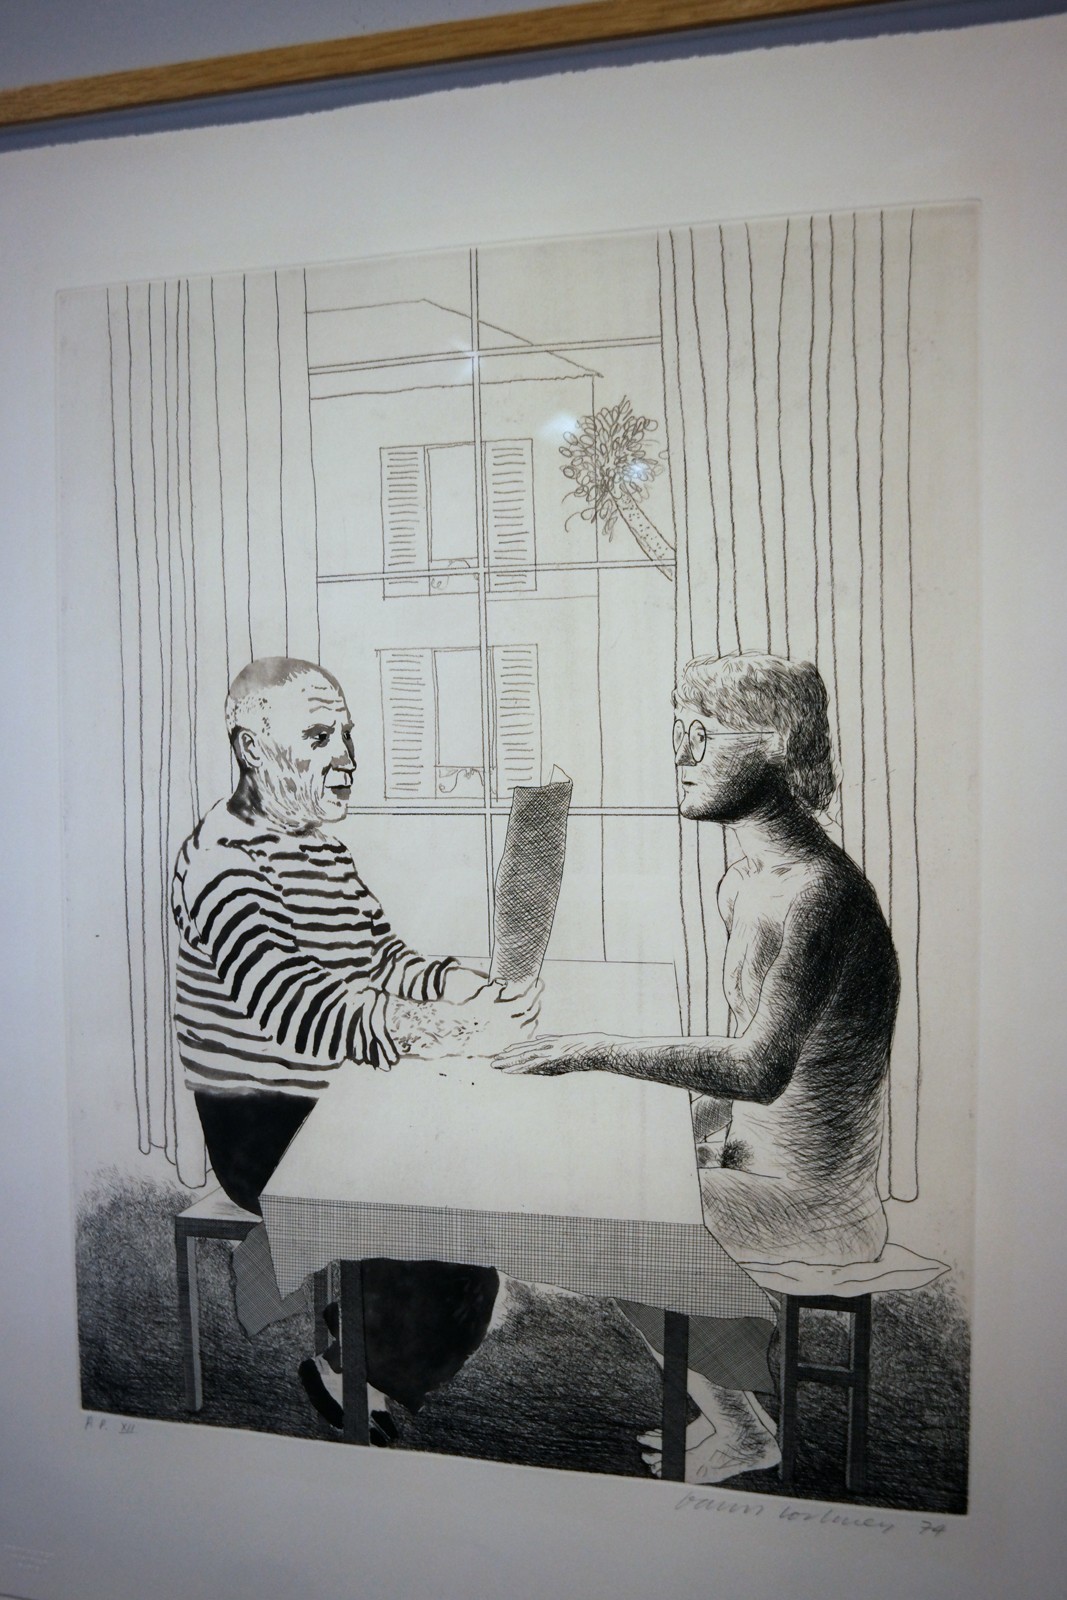 Artist and model, 1973-1974, David Hockney